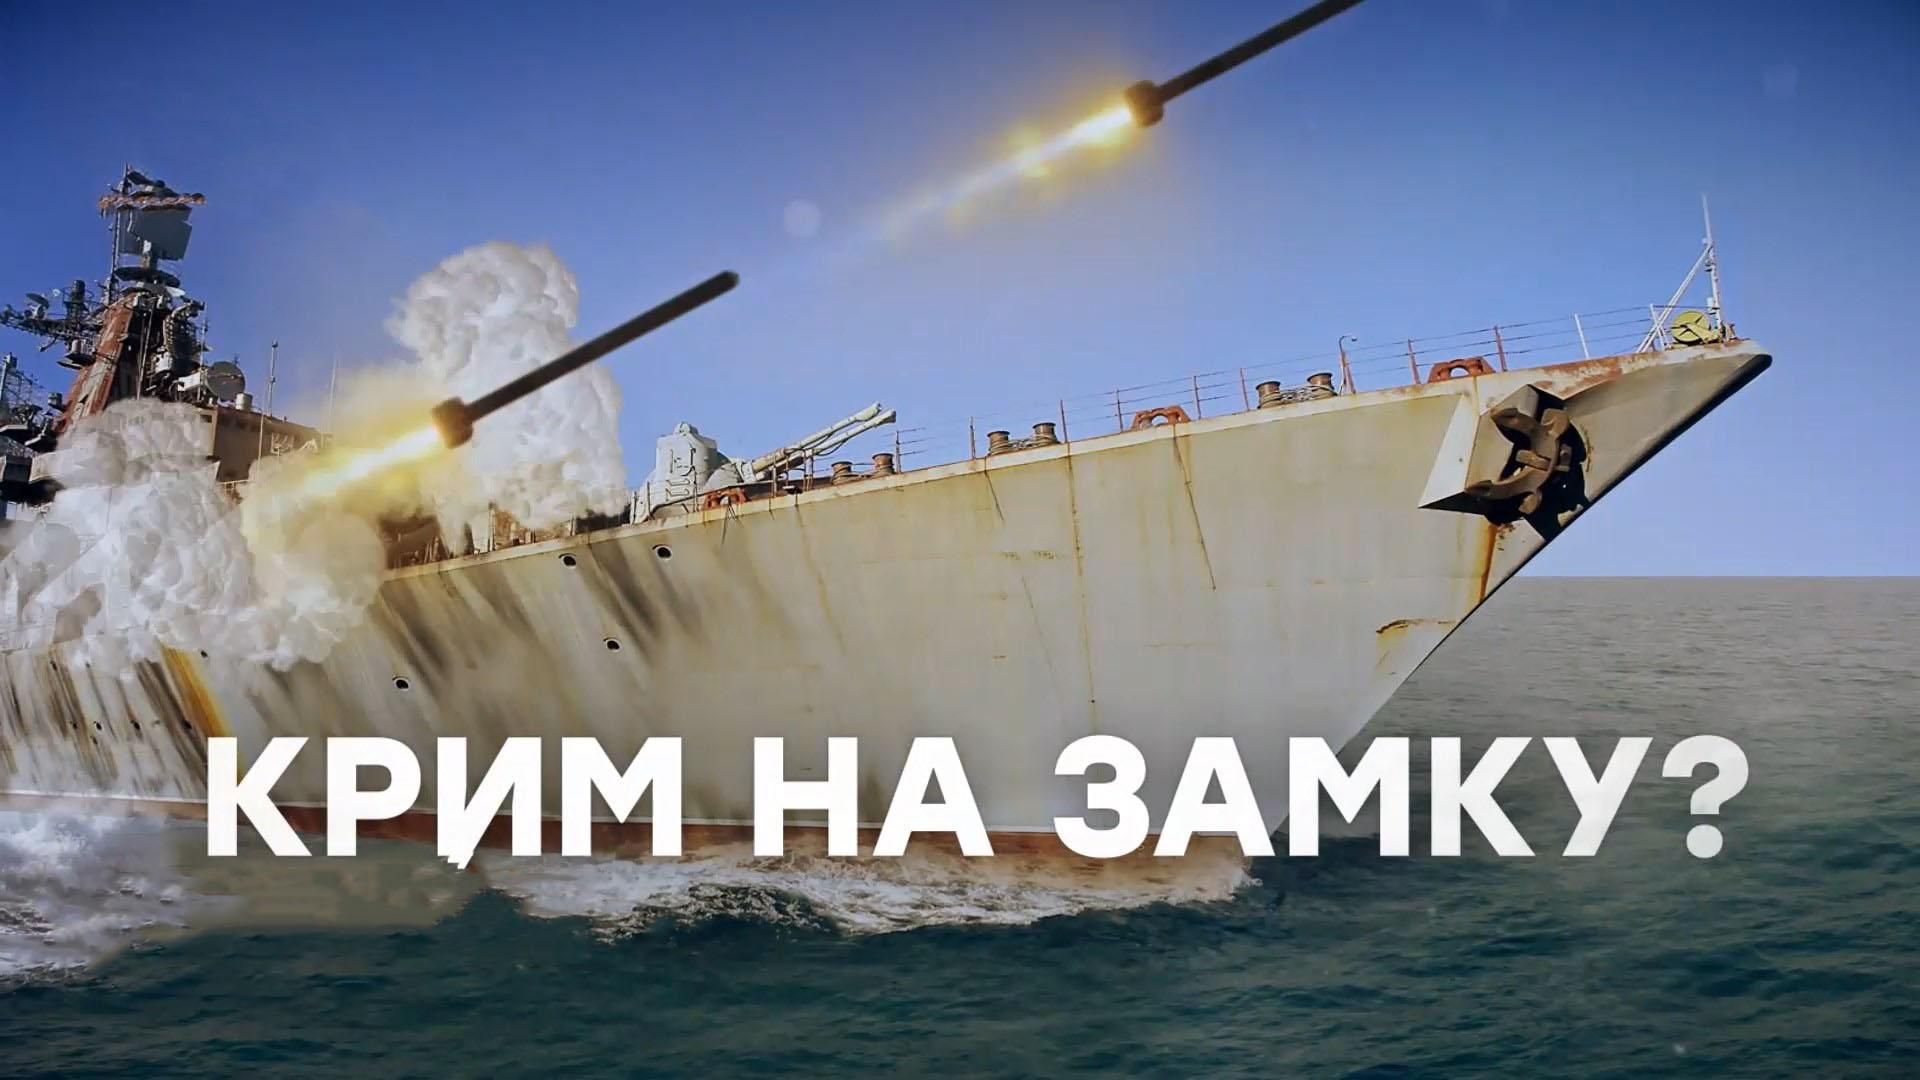 Крым на замке: украинские чиновники хотят заблокировать оккупированный полуостров с моря